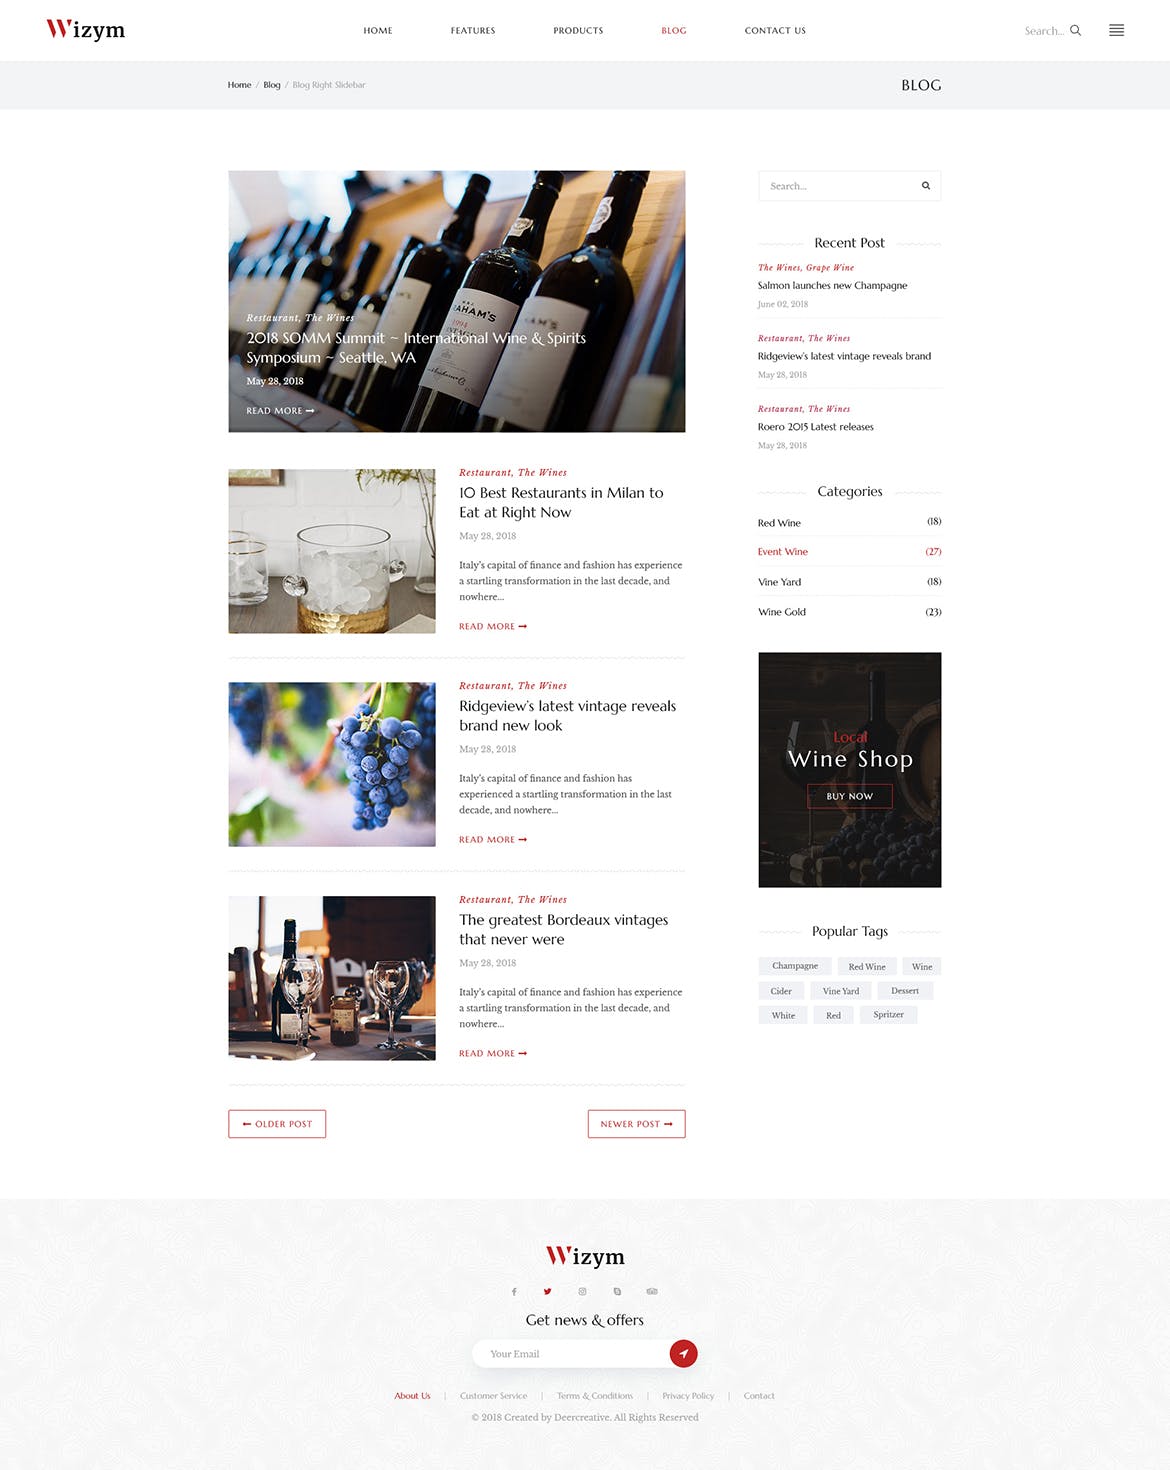 葡萄酒品牌网站设计PSD模板 Wizym | Wine & Winery PSD Template插图(11)